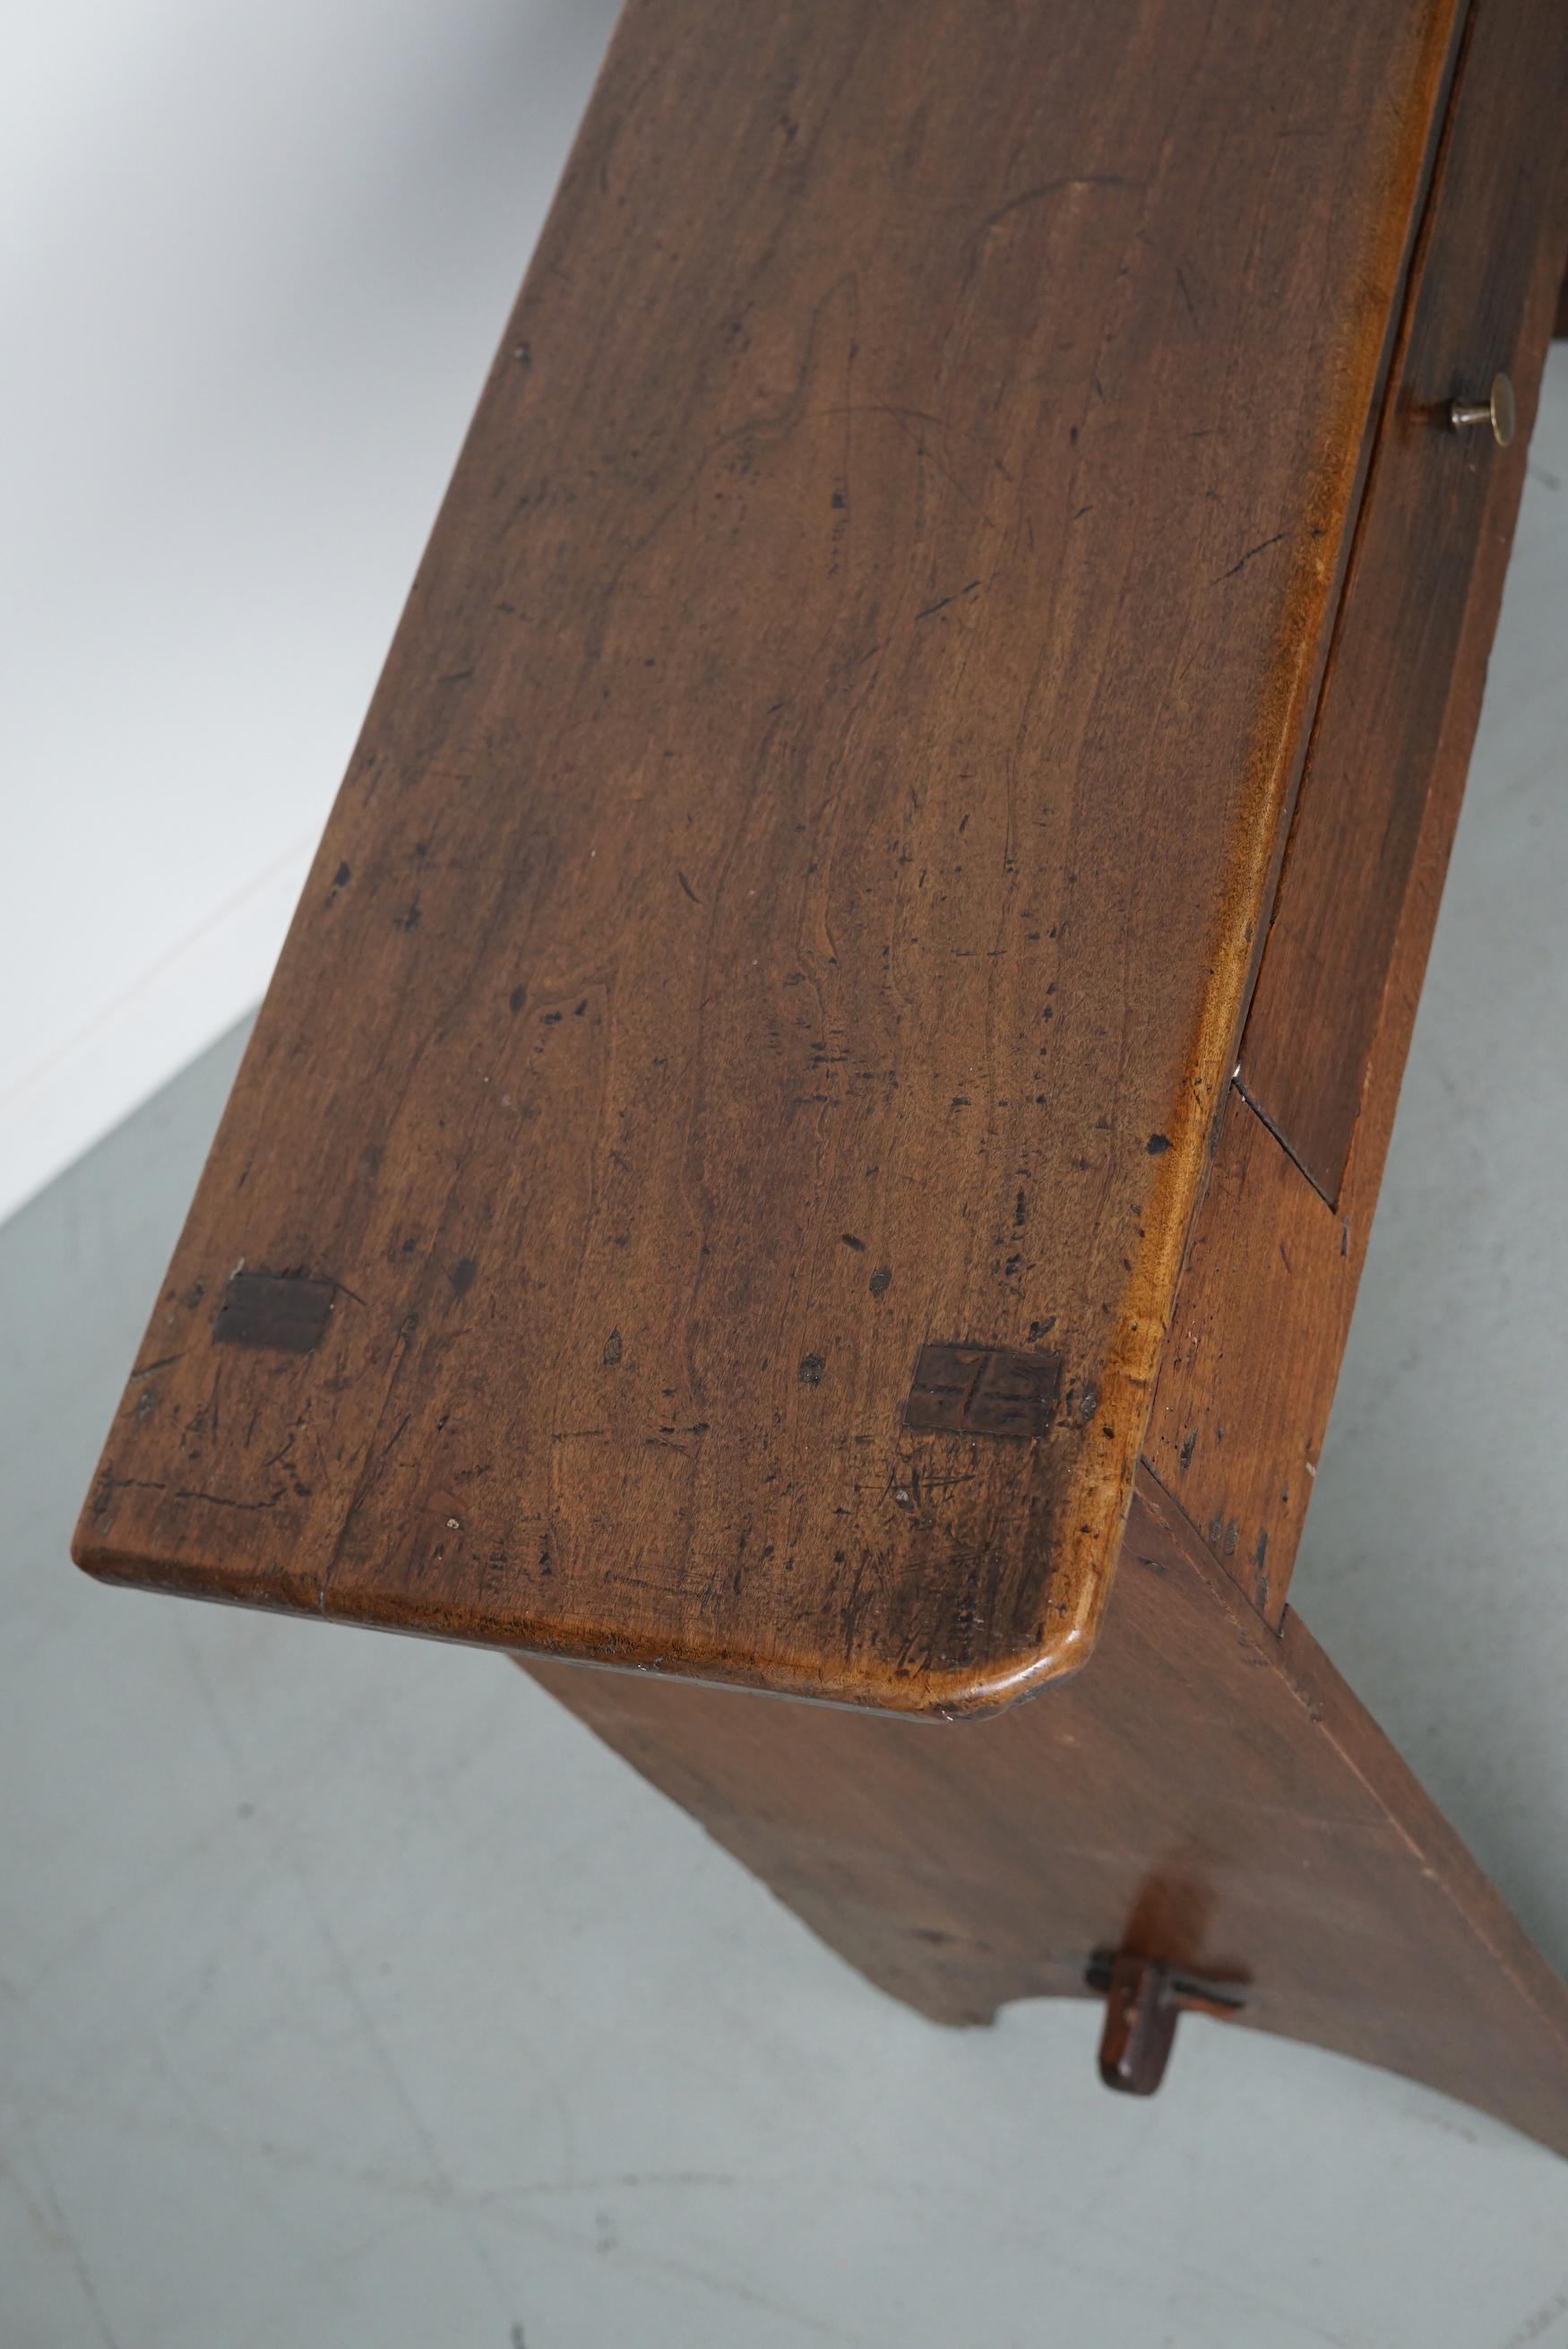 Dieser elegante Tisch wurde in Frankreich aus Obstholz mit schönen Maserungen hergestellt. Er hat eine warme Farbe mit tiefem Glanz und der Tisch zeigt viele Gebrauchsspuren und hat eine tolle Patina.